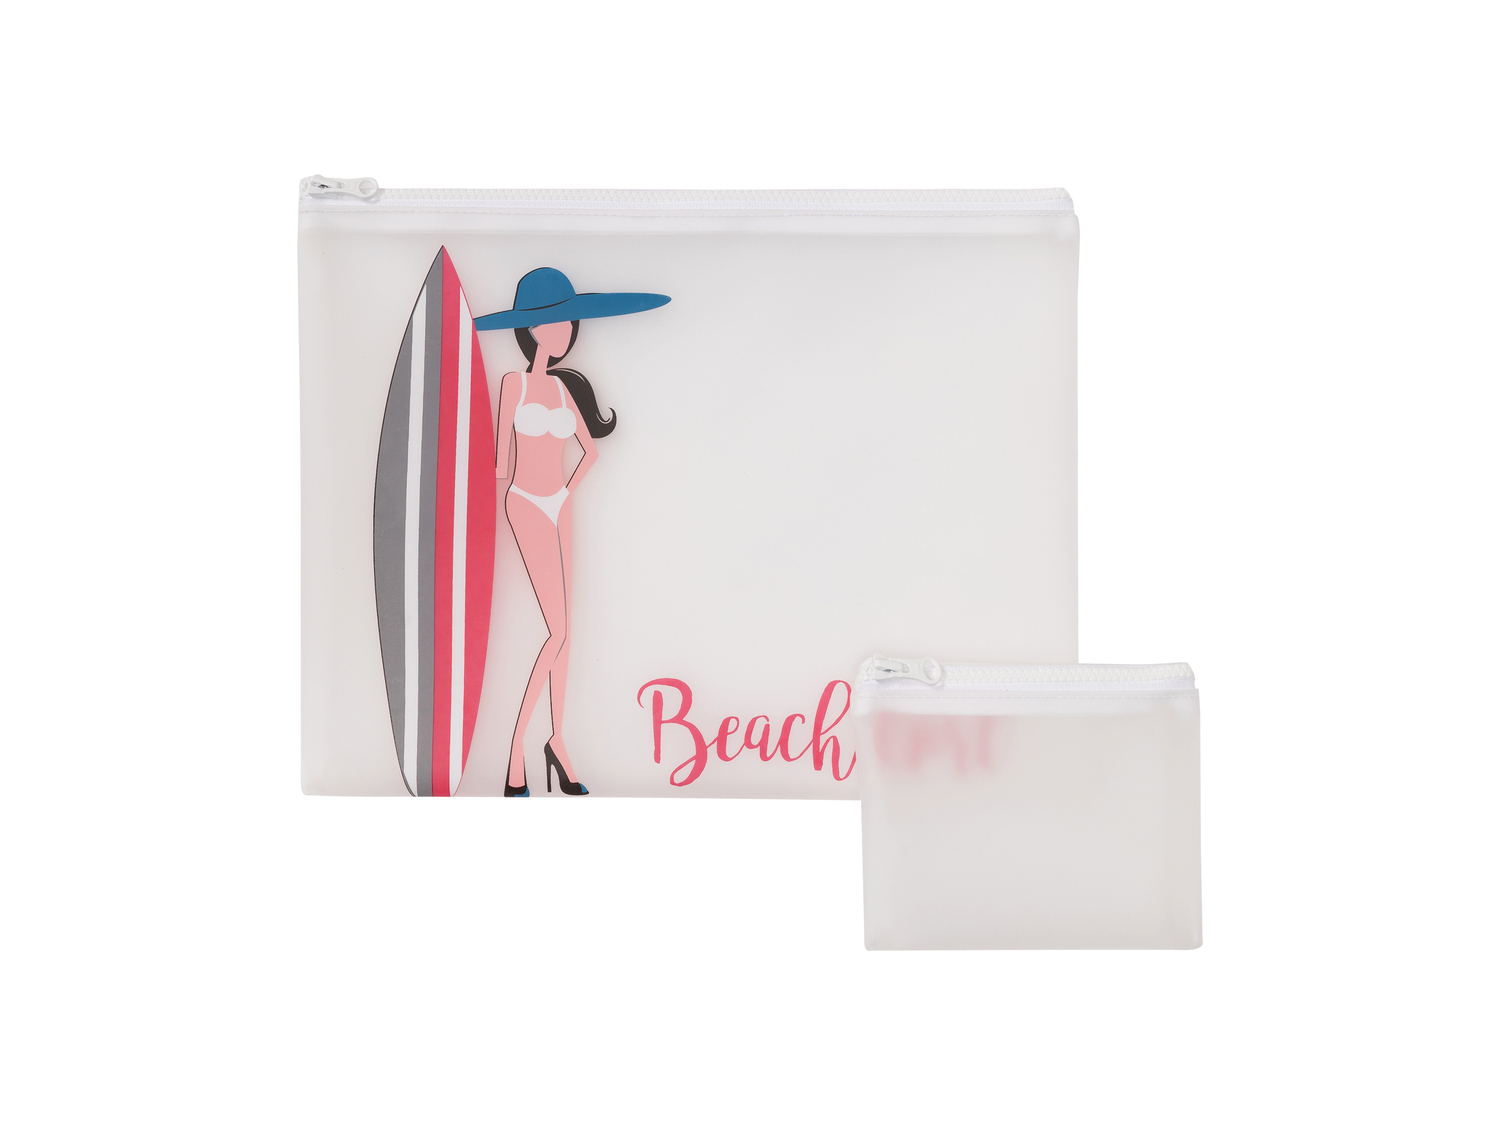 Pochette da spiaggia Esmara, prezzo 4.99 €  
2 pezzi
Bikini Bag